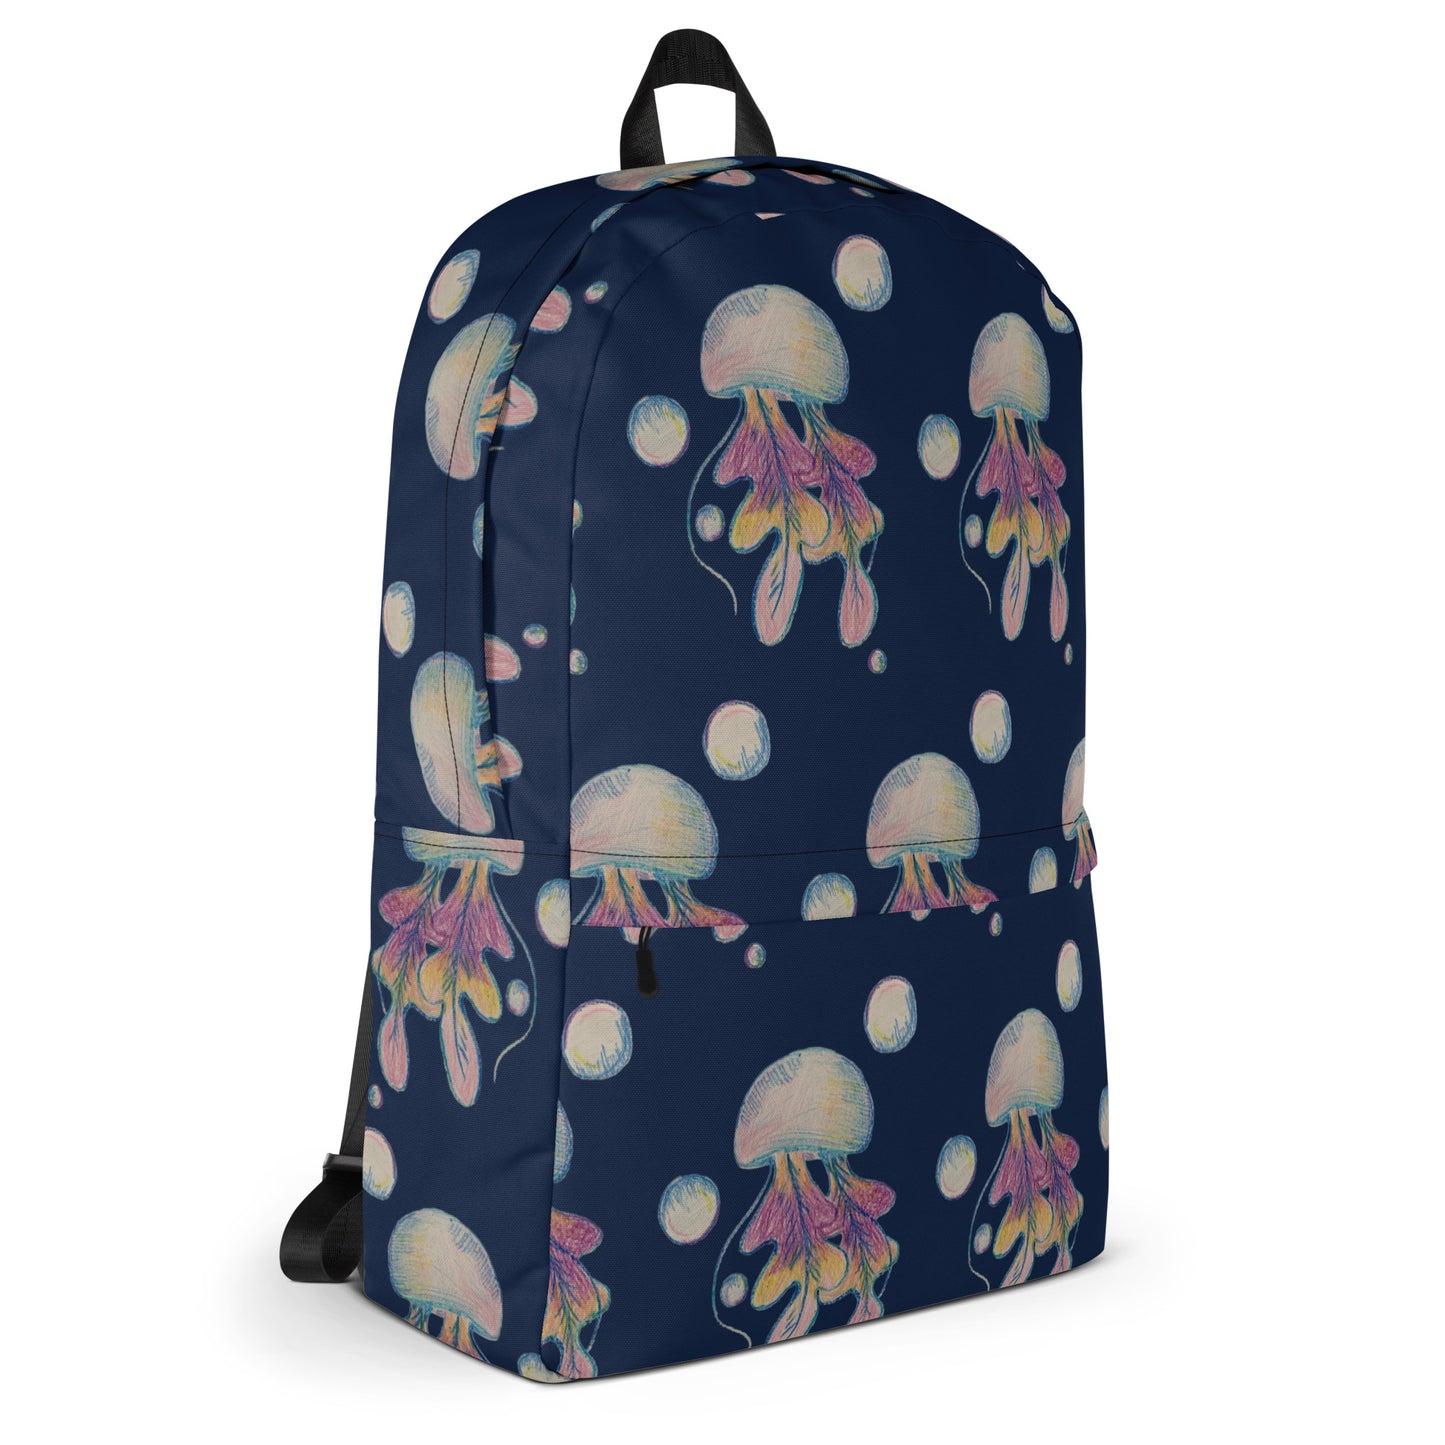 Jellyfish Backpack